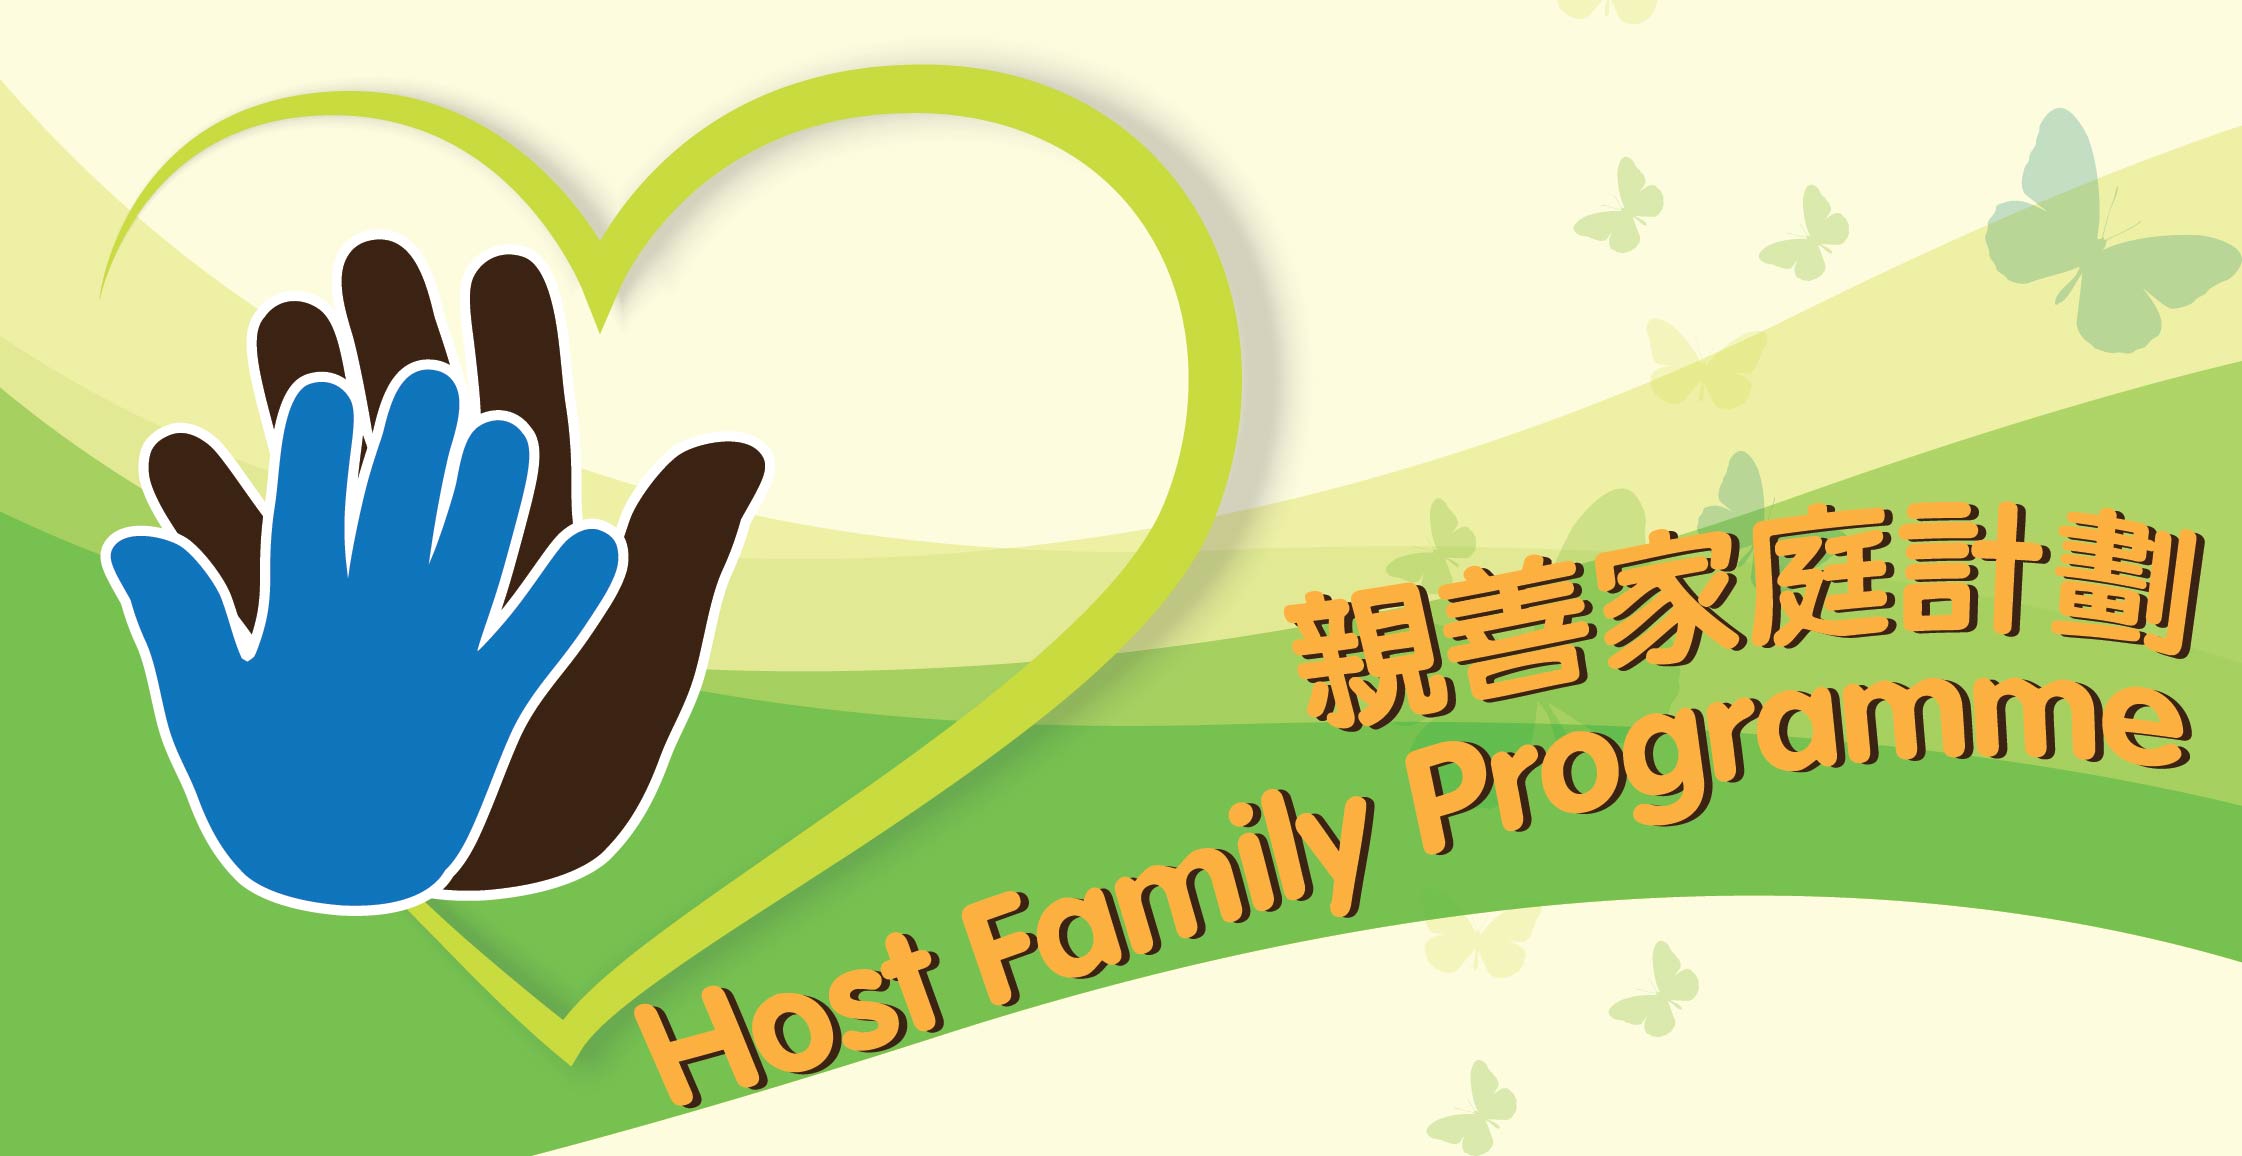 Host Family Programme